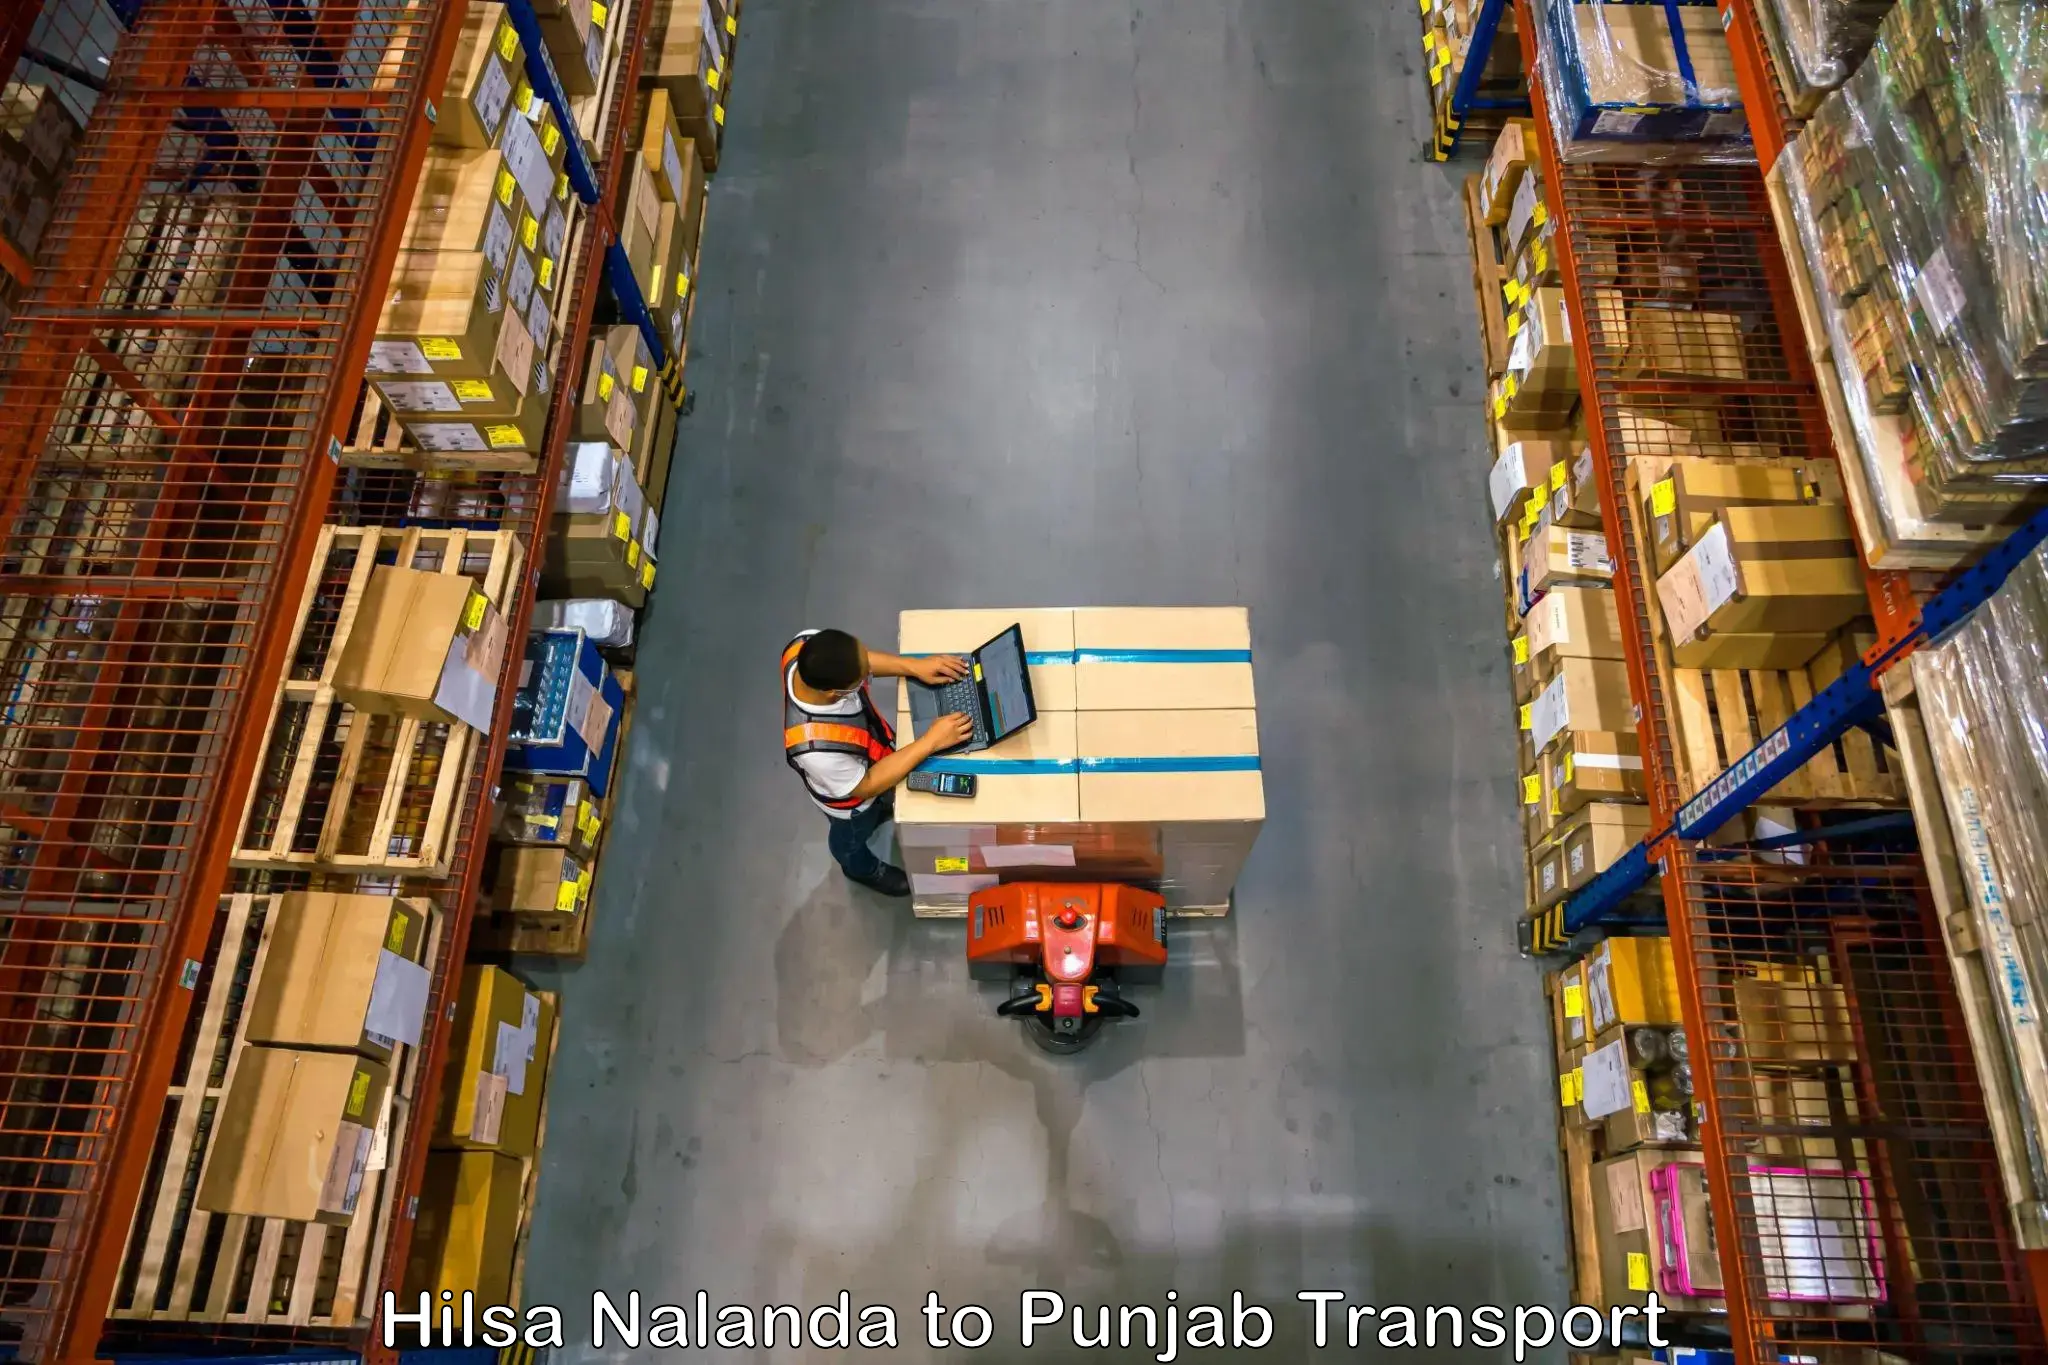 Daily parcel service transport Hilsa Nalanda to Nakodar